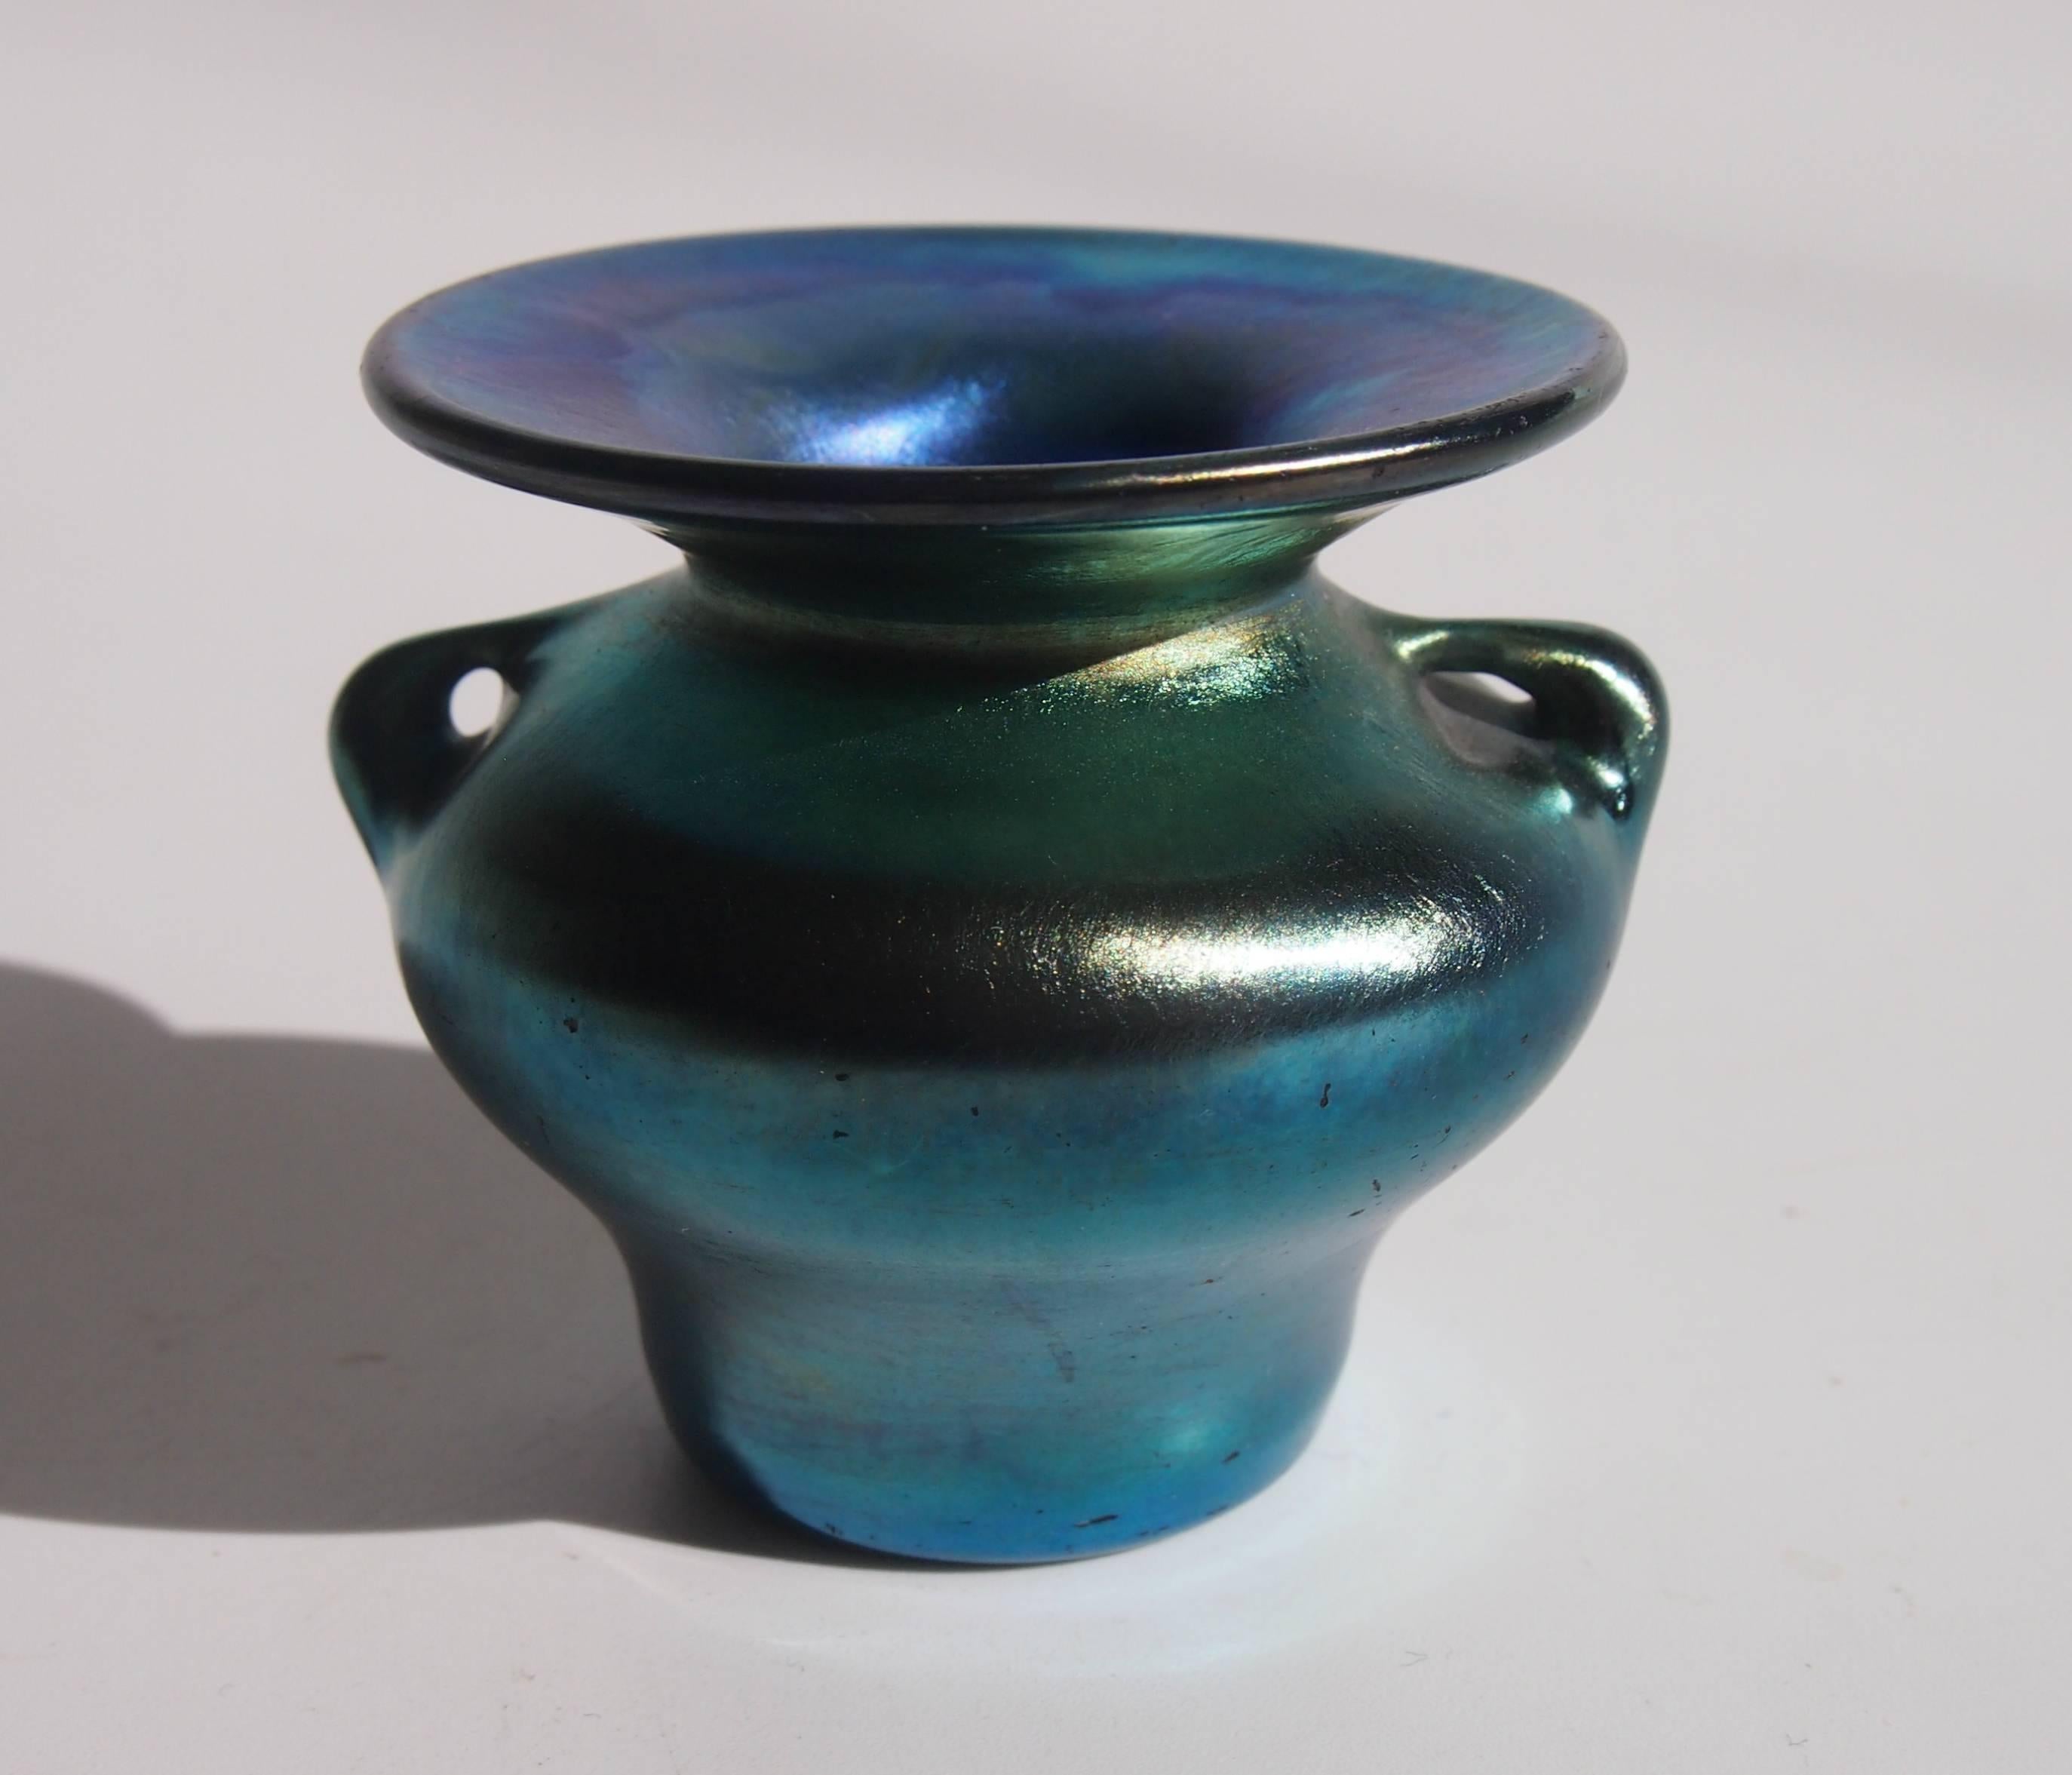 American L C Tiffany Art Nouveau Blue Miniature Favrile Glass Urn/Vase For Sale